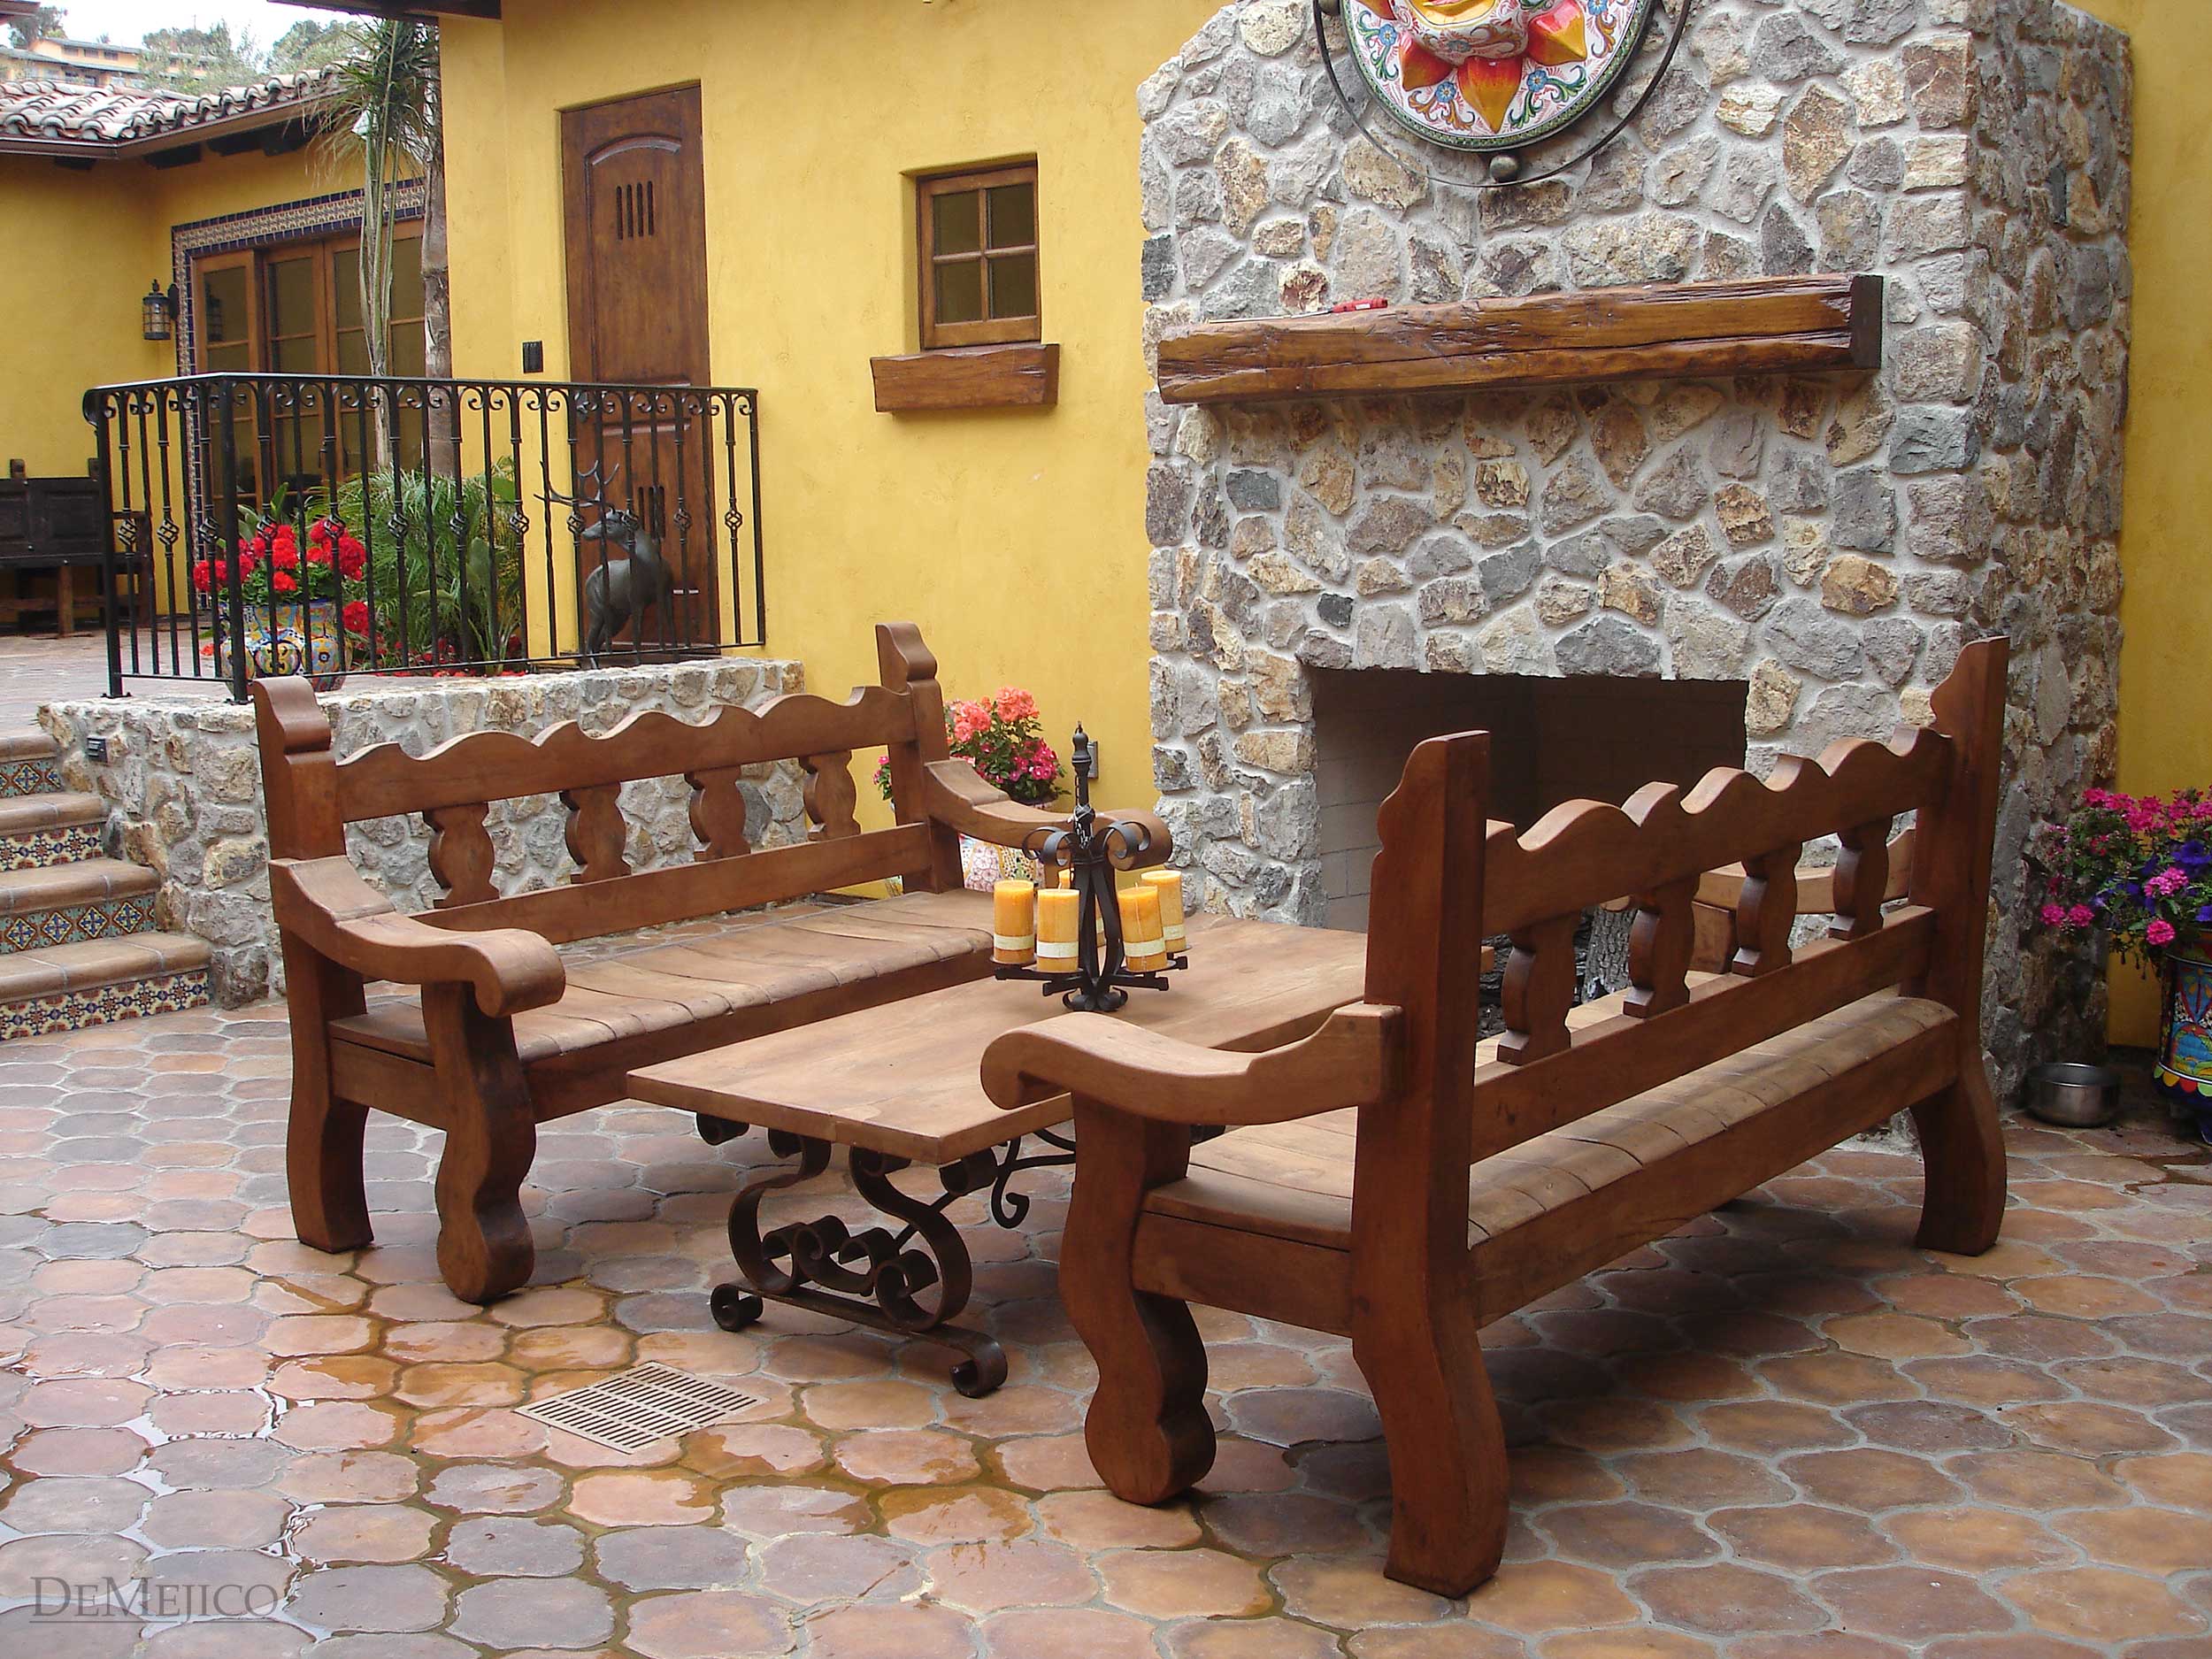  spanish garden furniture